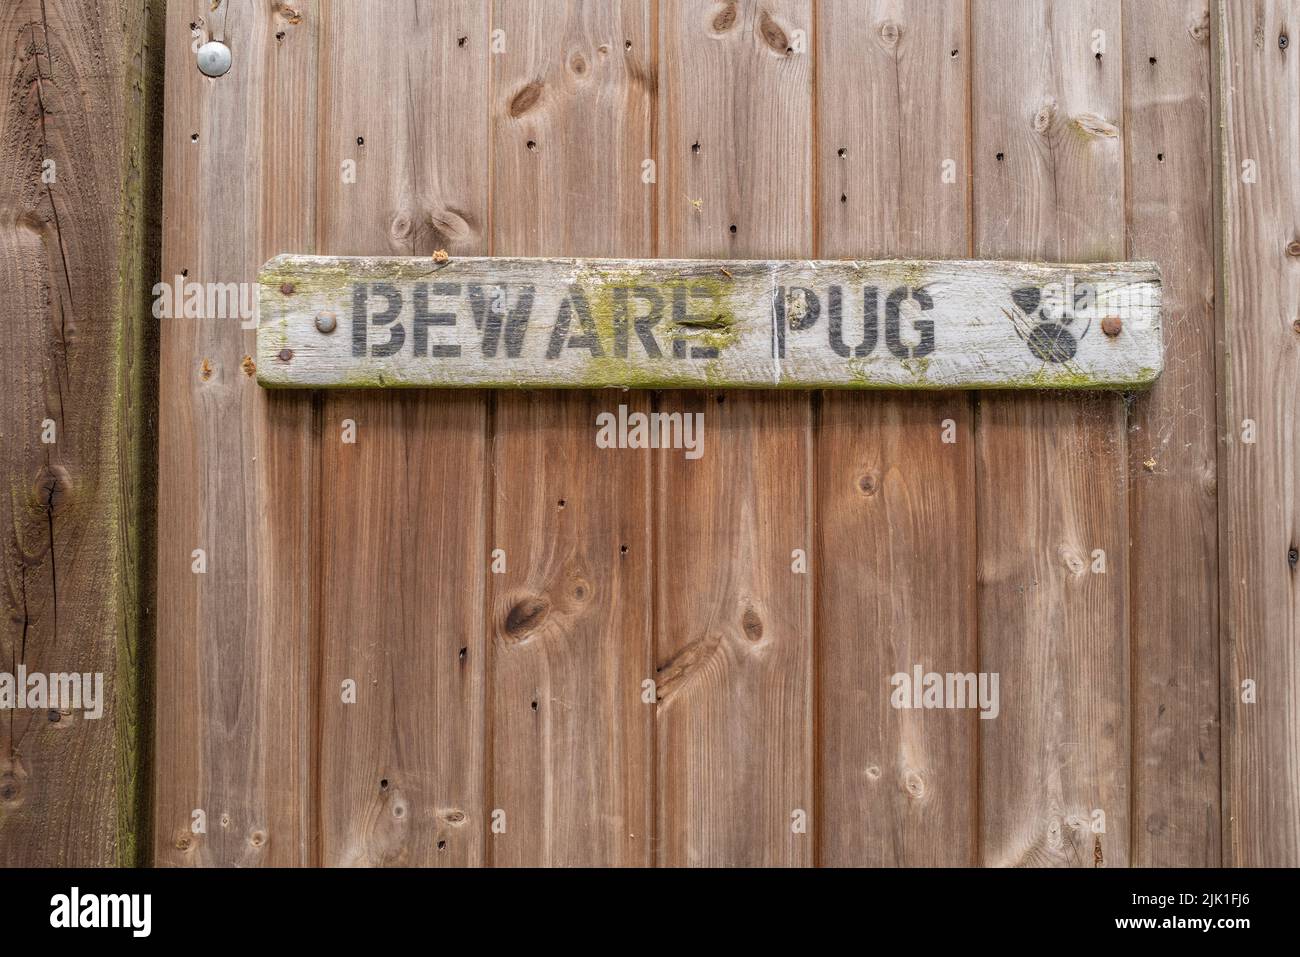 Una puerta de la casa que despalpa Beware Pug signo. Foto de stock